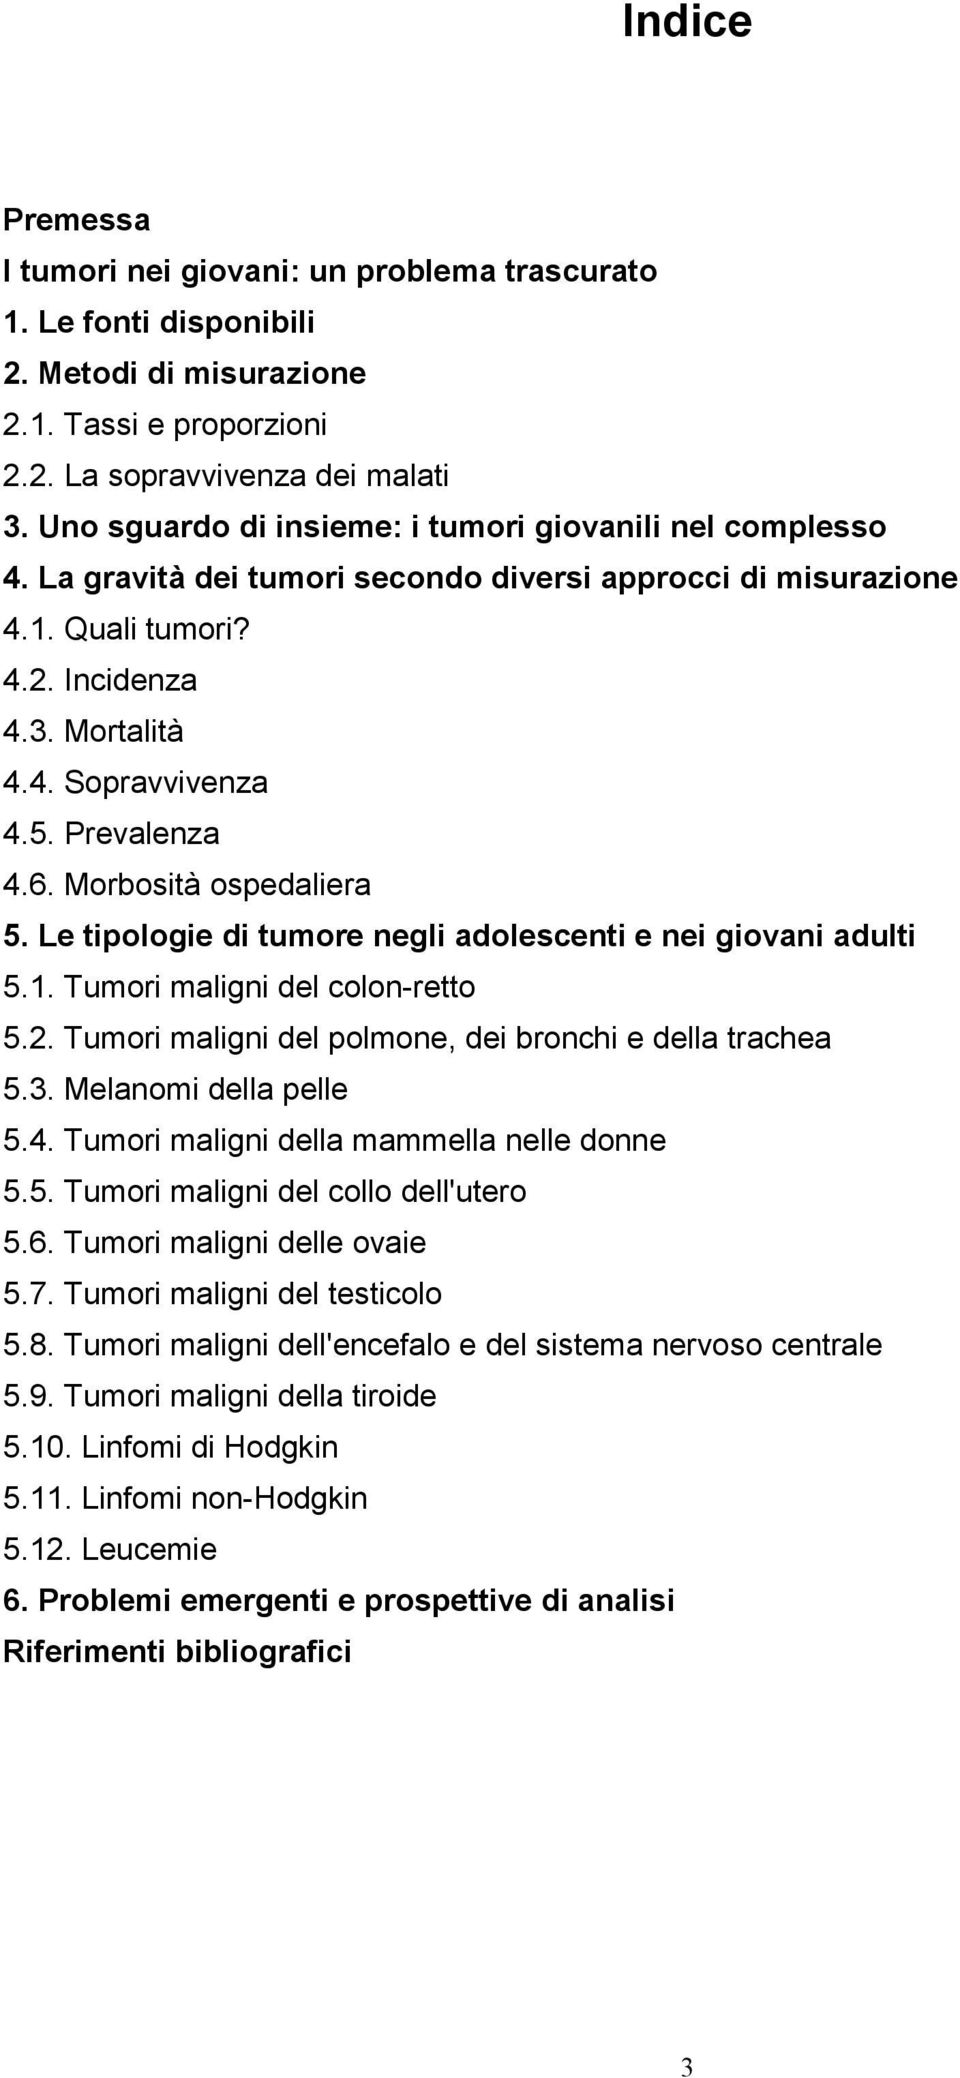 Prevalenza 4.6. Morbosità ospedaliera 5. Le tipologie di tumore negli adolescenti e nei giovani adulti 5.1. Tumori maligni del colon-retto 5.2.